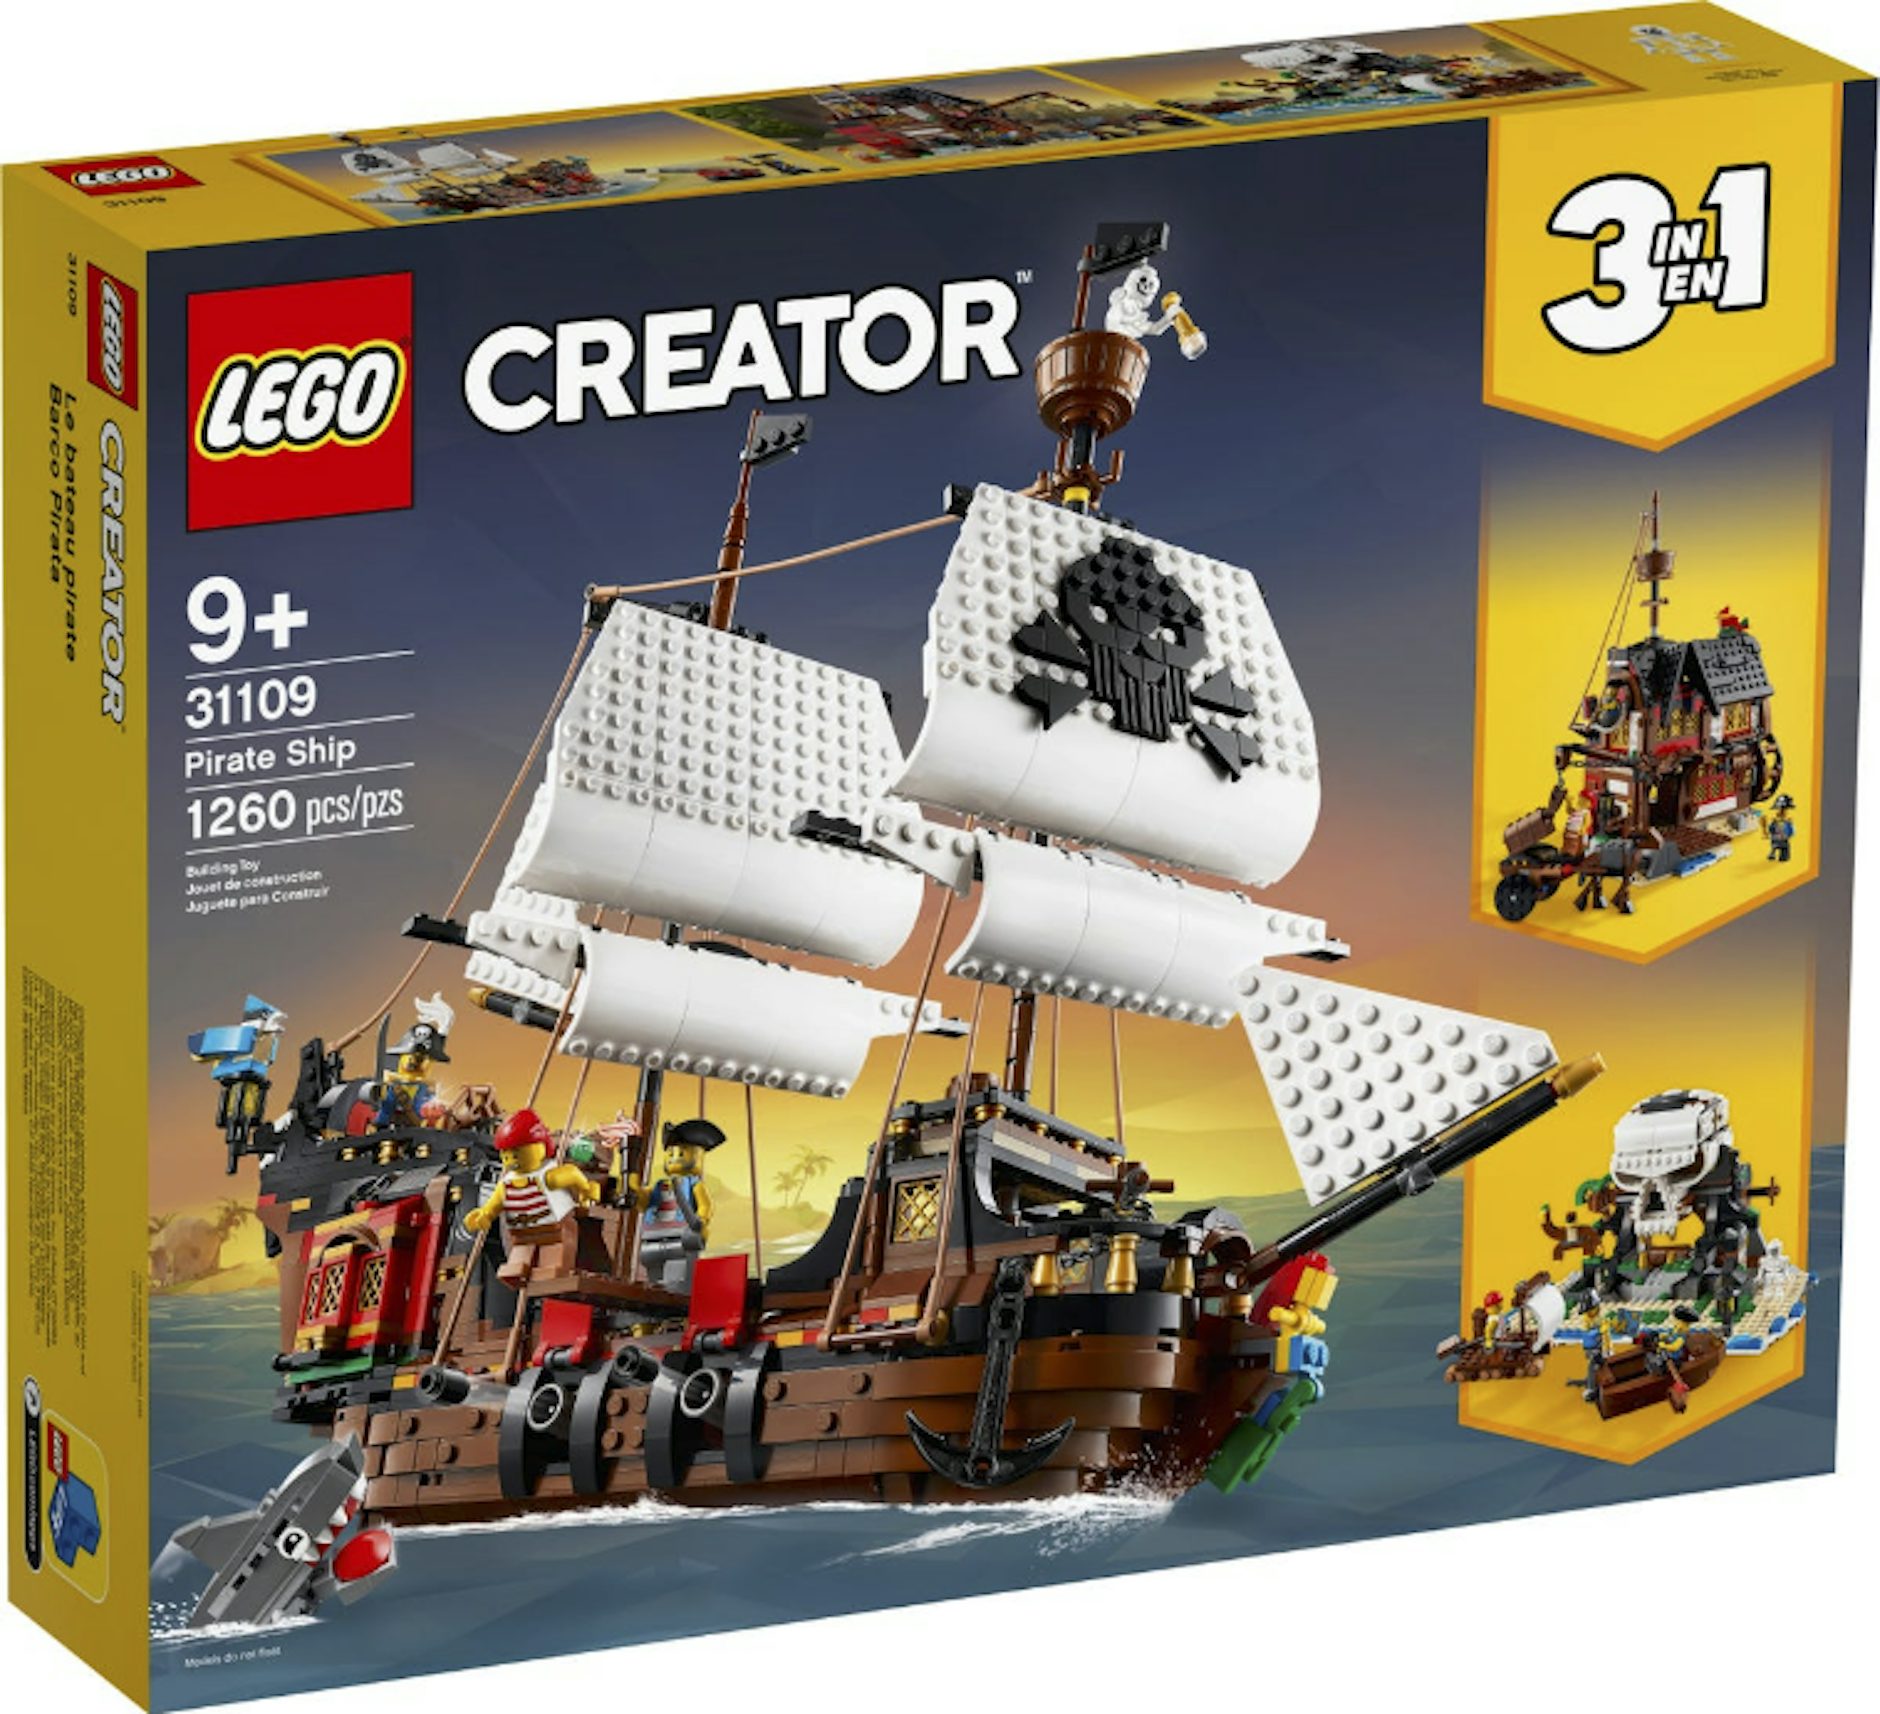 LEGO IDEAS - The Island Pirates Coaster